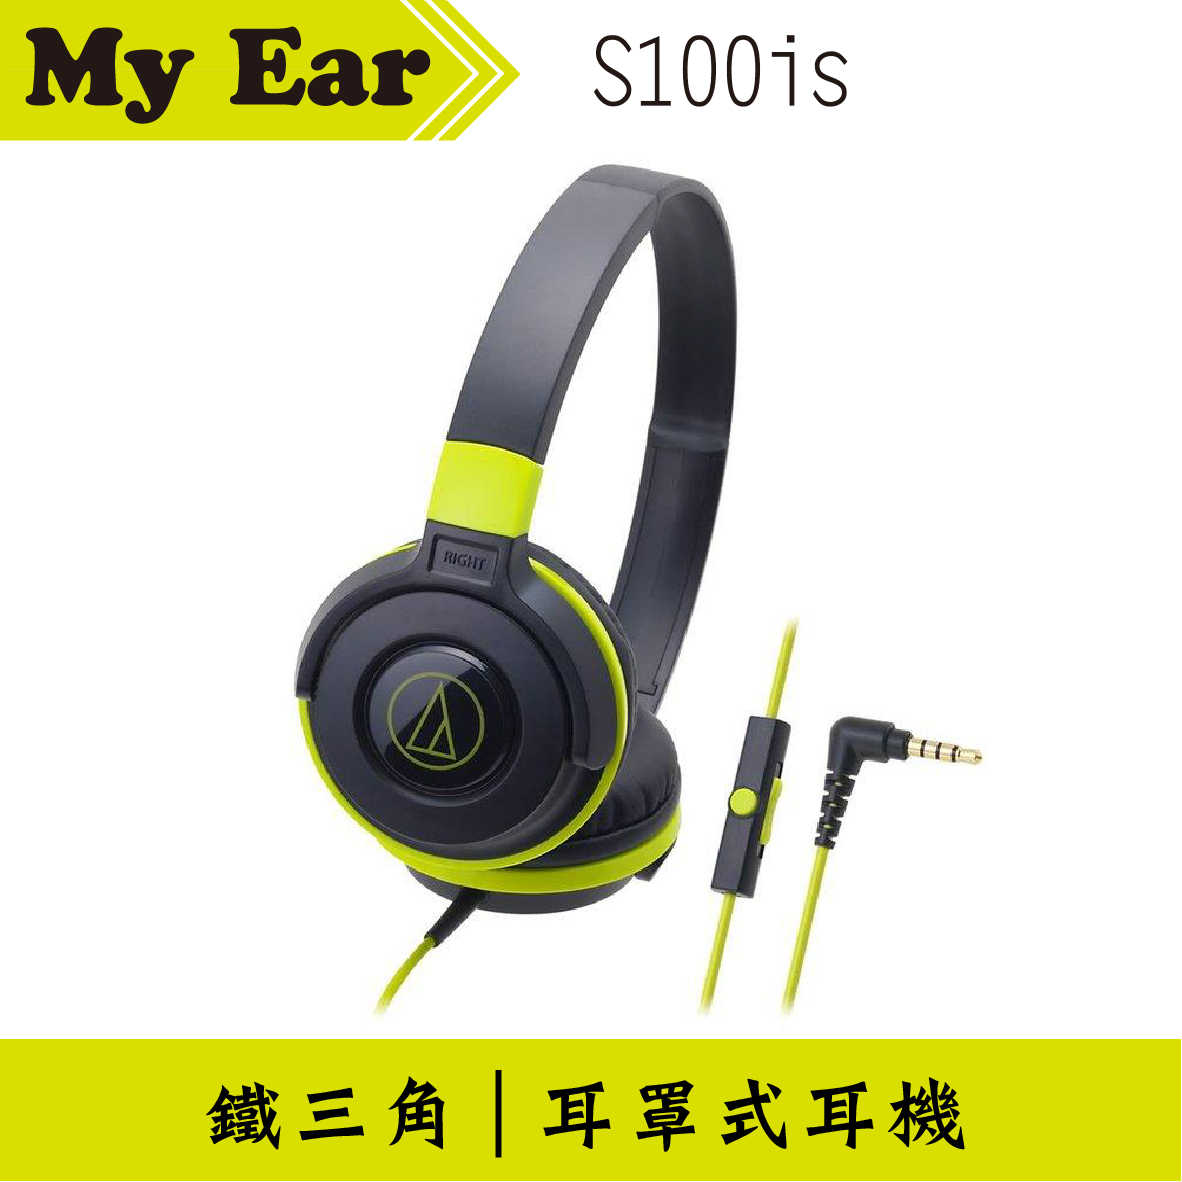 鐵三角 ATH-S100is 線控耳罩式耳機 黑綠 | My Ear 耳機專門店